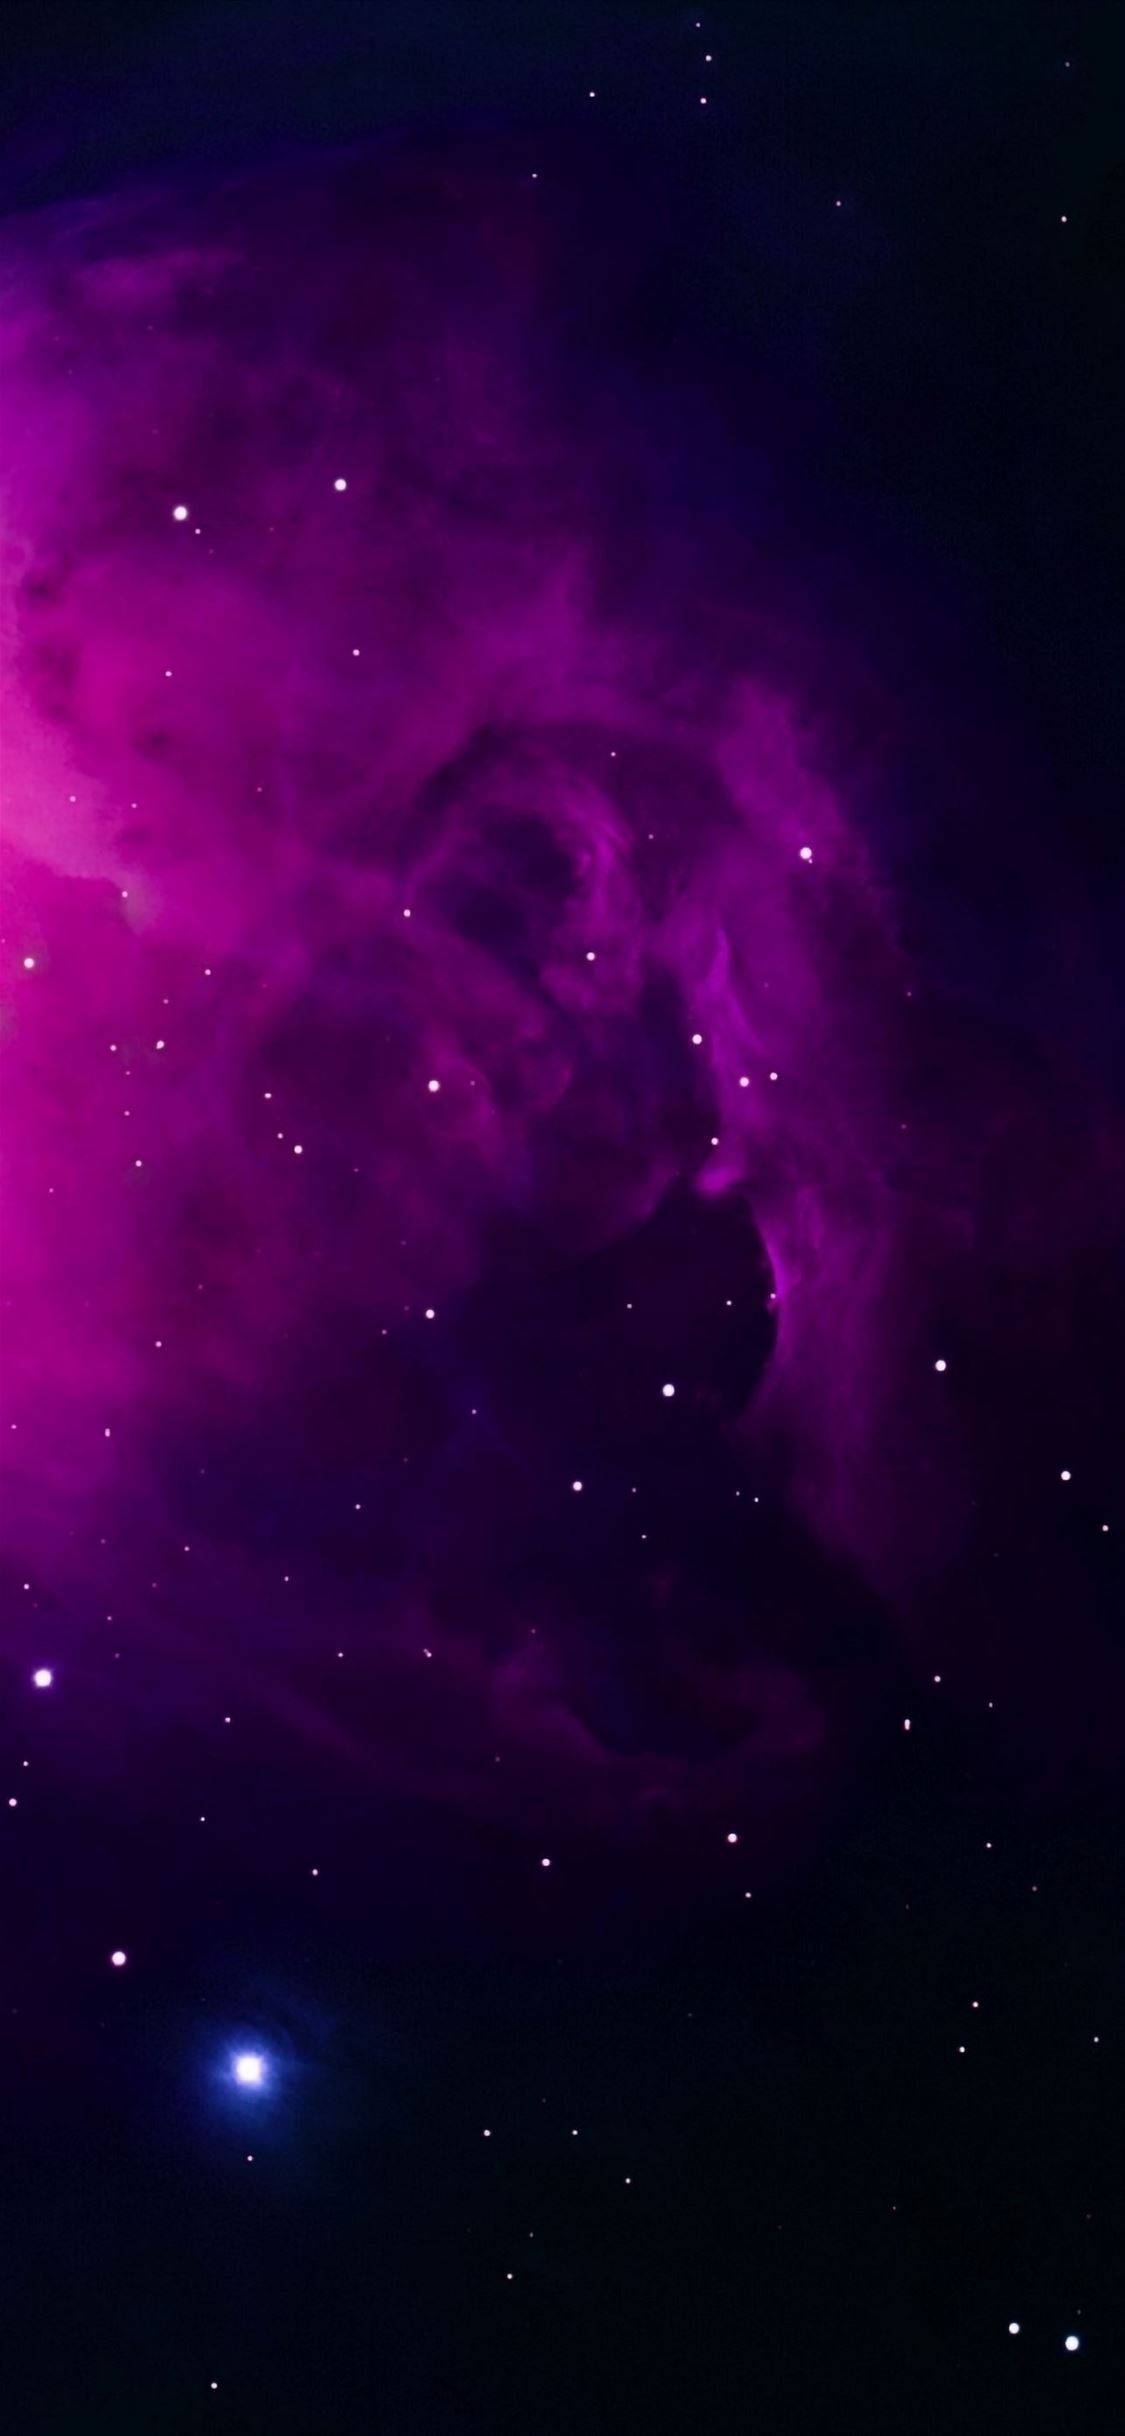  Orion Nebula wallpaper   Wallery